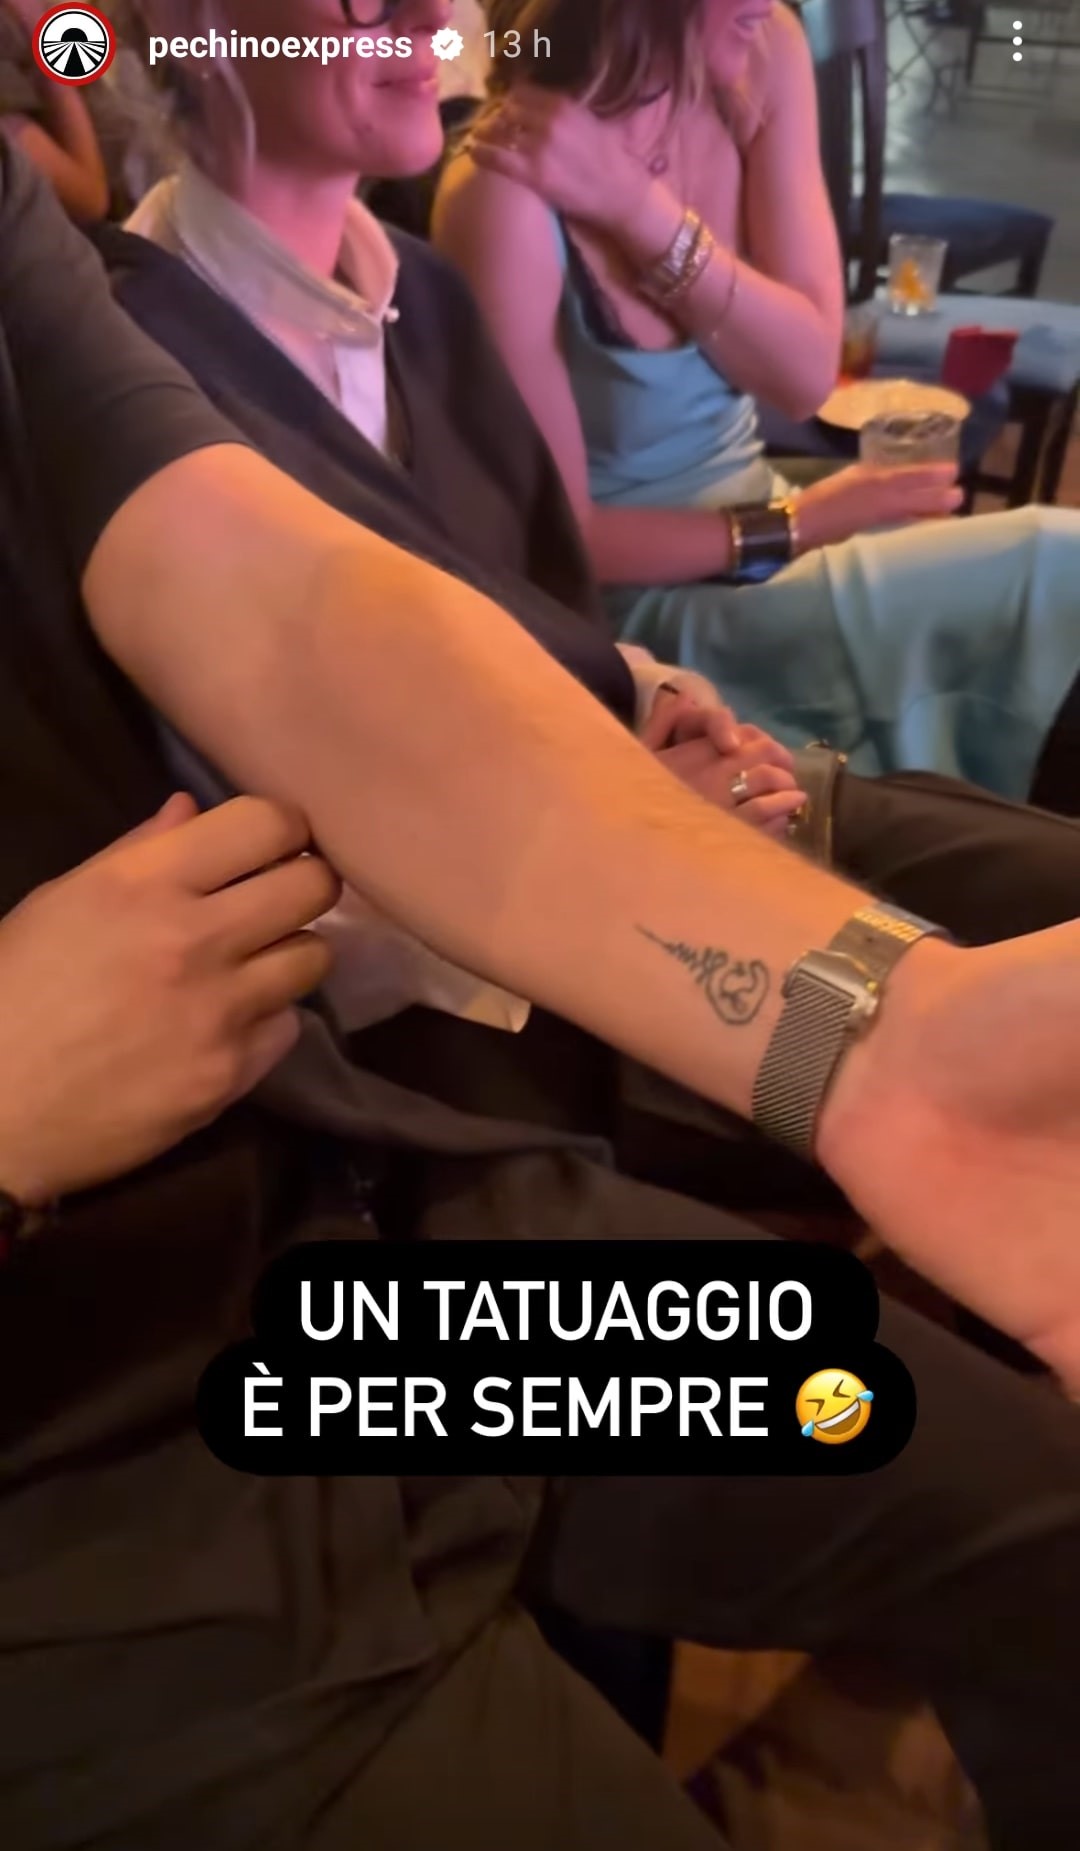 Anche Matteo Giunta si tatua. Fonte: account ufficiale Pechino Express - Instagram